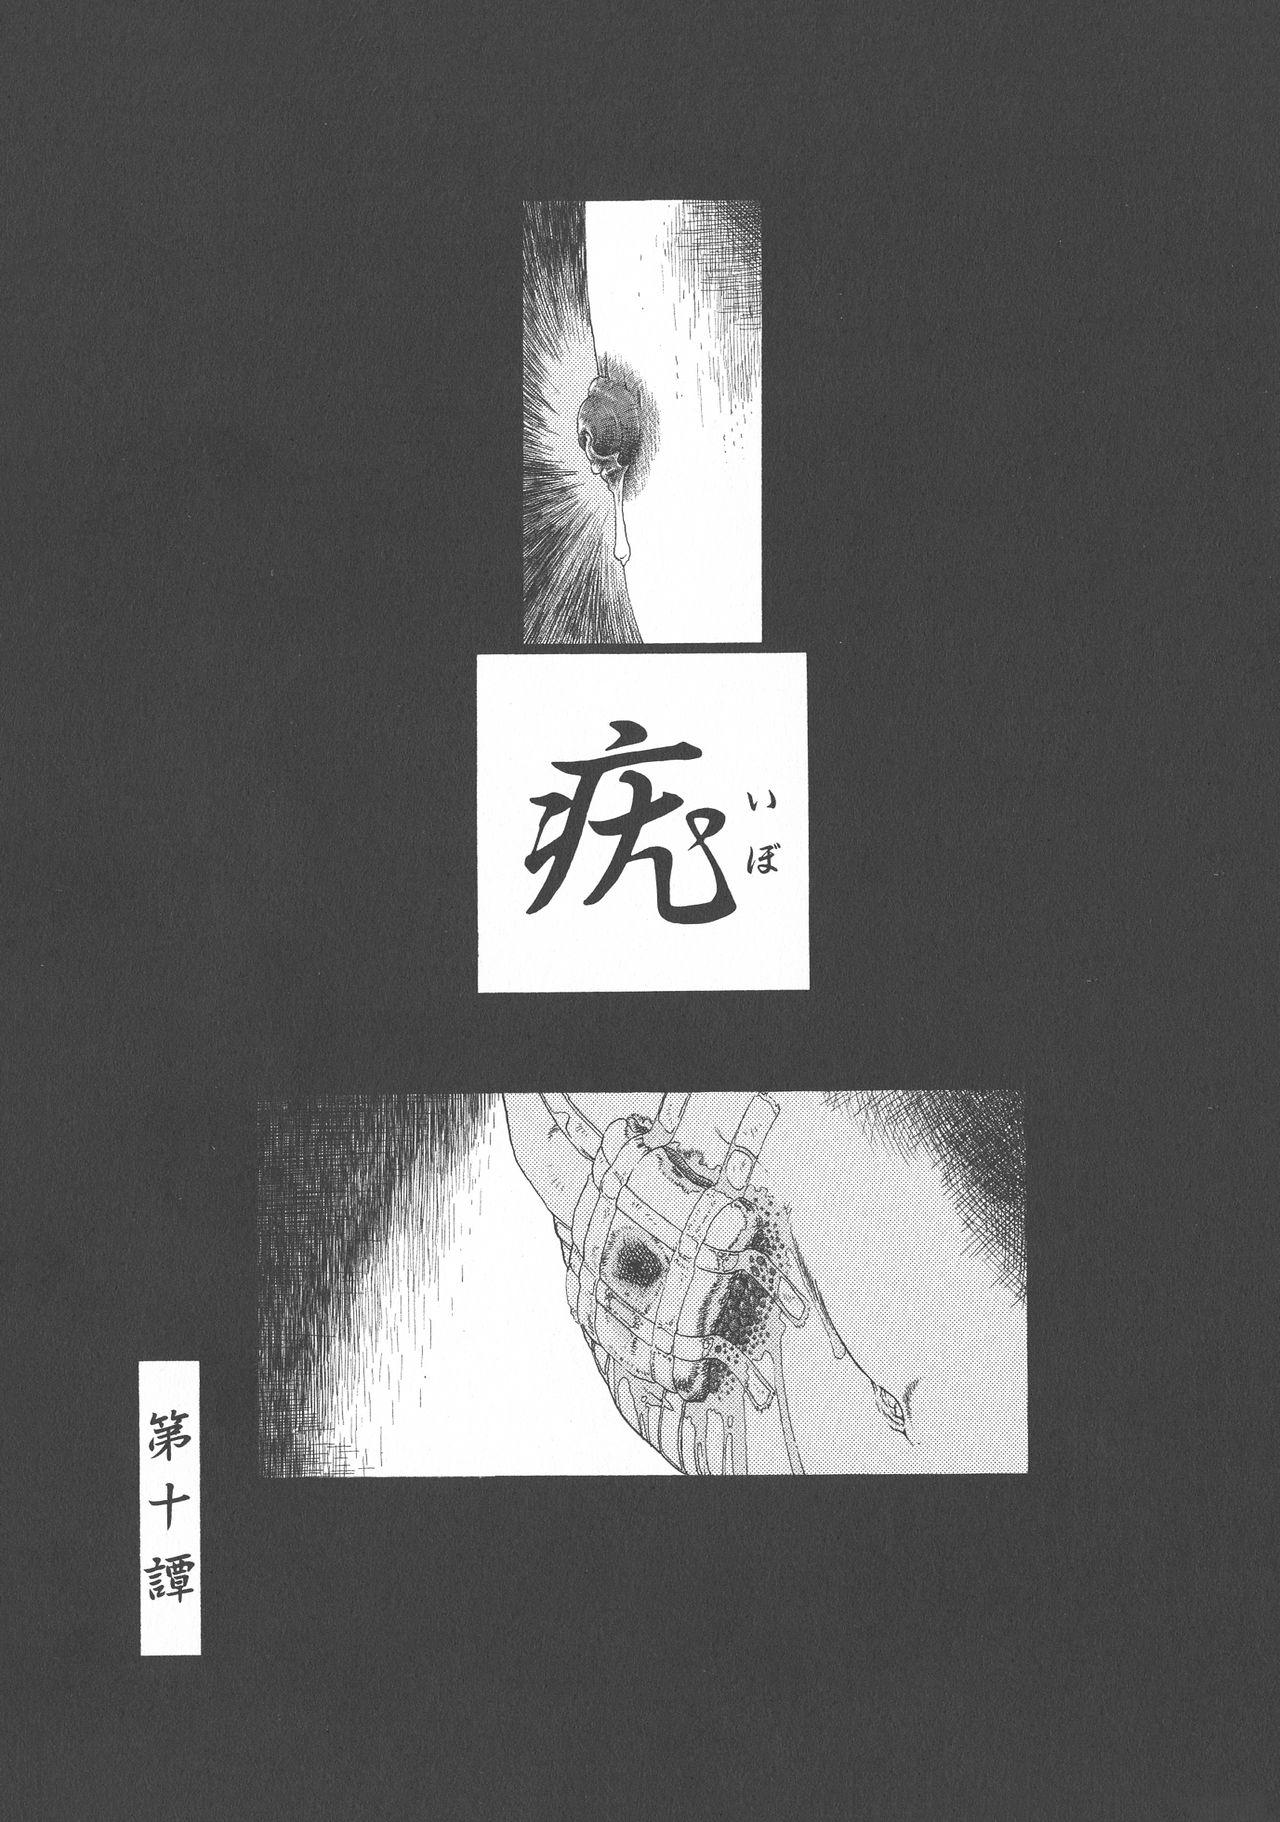 Gesuigai Shinsou-ban Nigo Aka 160